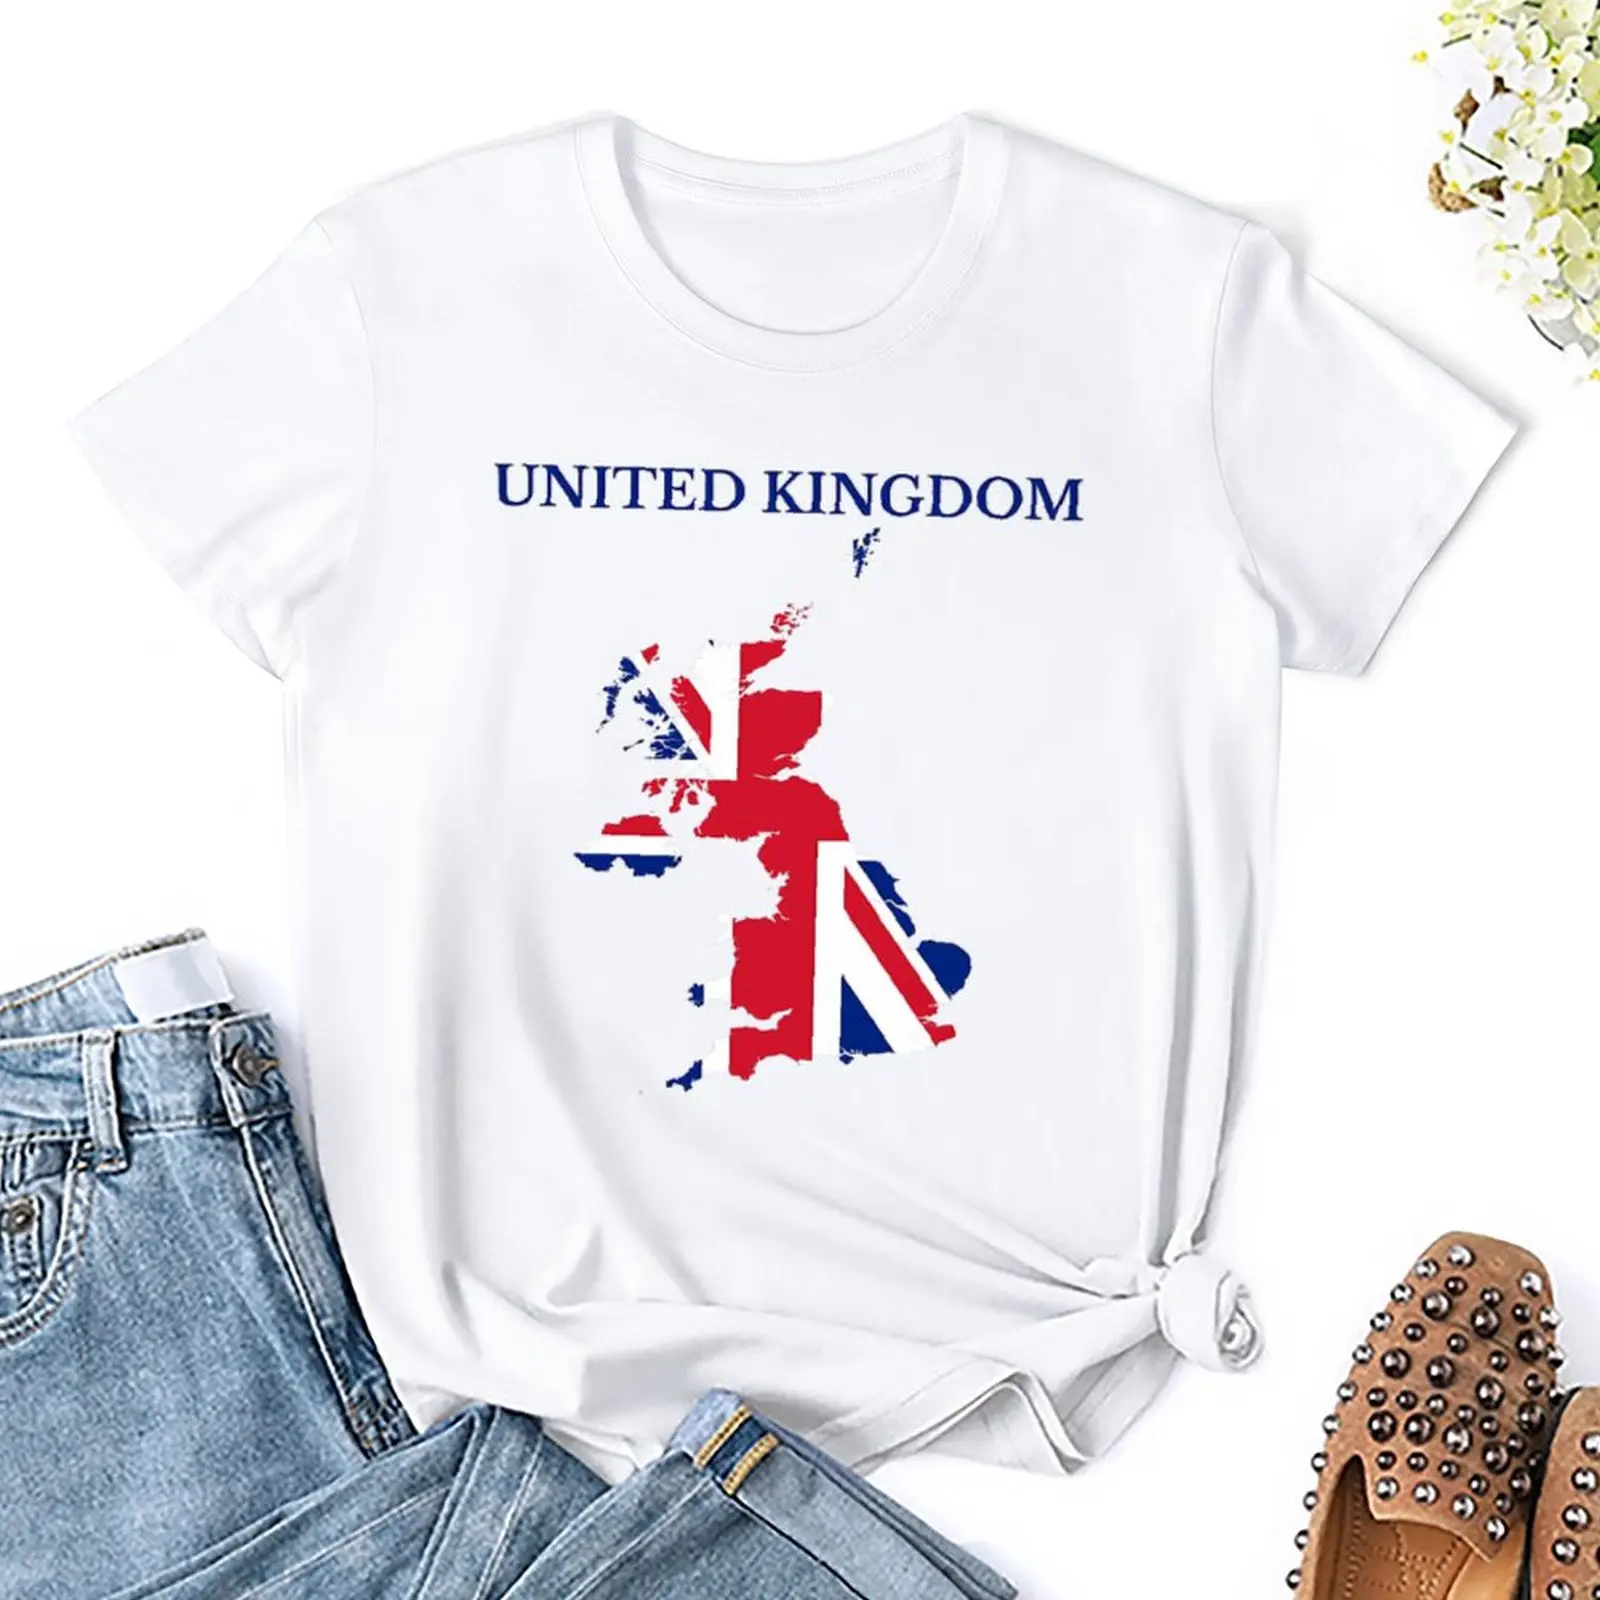 Карта Соединенного Королевства, Флаг Великобритании, Спортивная футболка из 100% хлопка, повседневная графическая Домашняя Одежда, высококачественный Размер США